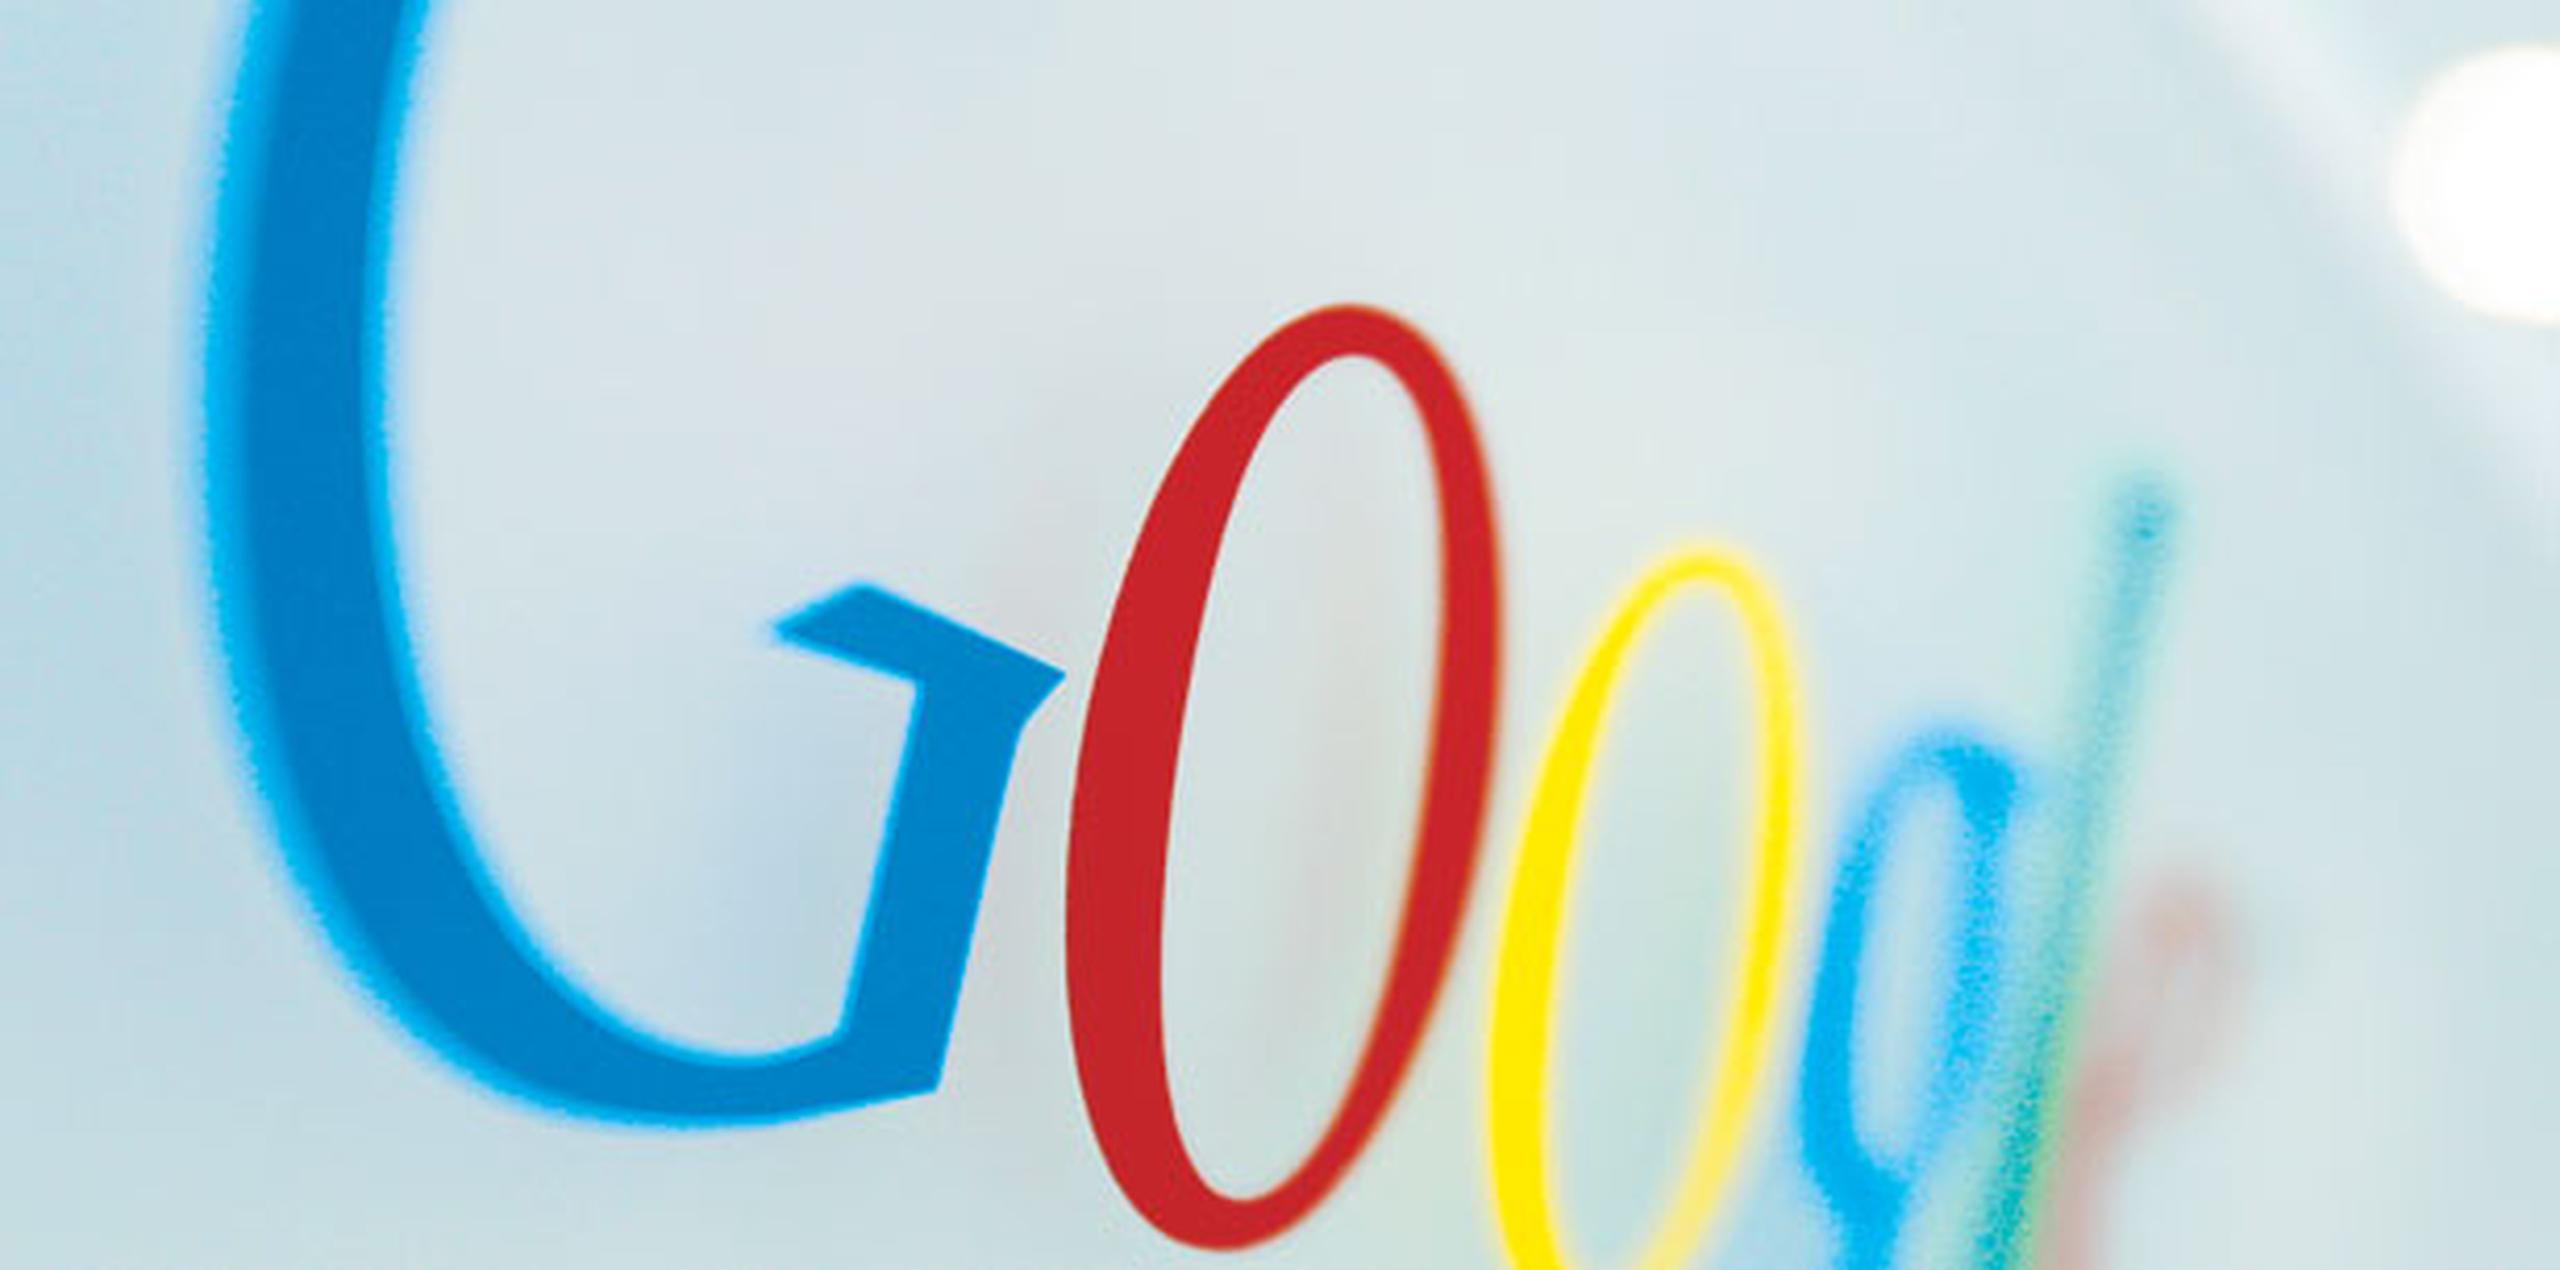 El cambio en los hábitos de los usuarios ha obligado a Google a reconsiderar su negocio central. (Archivo)